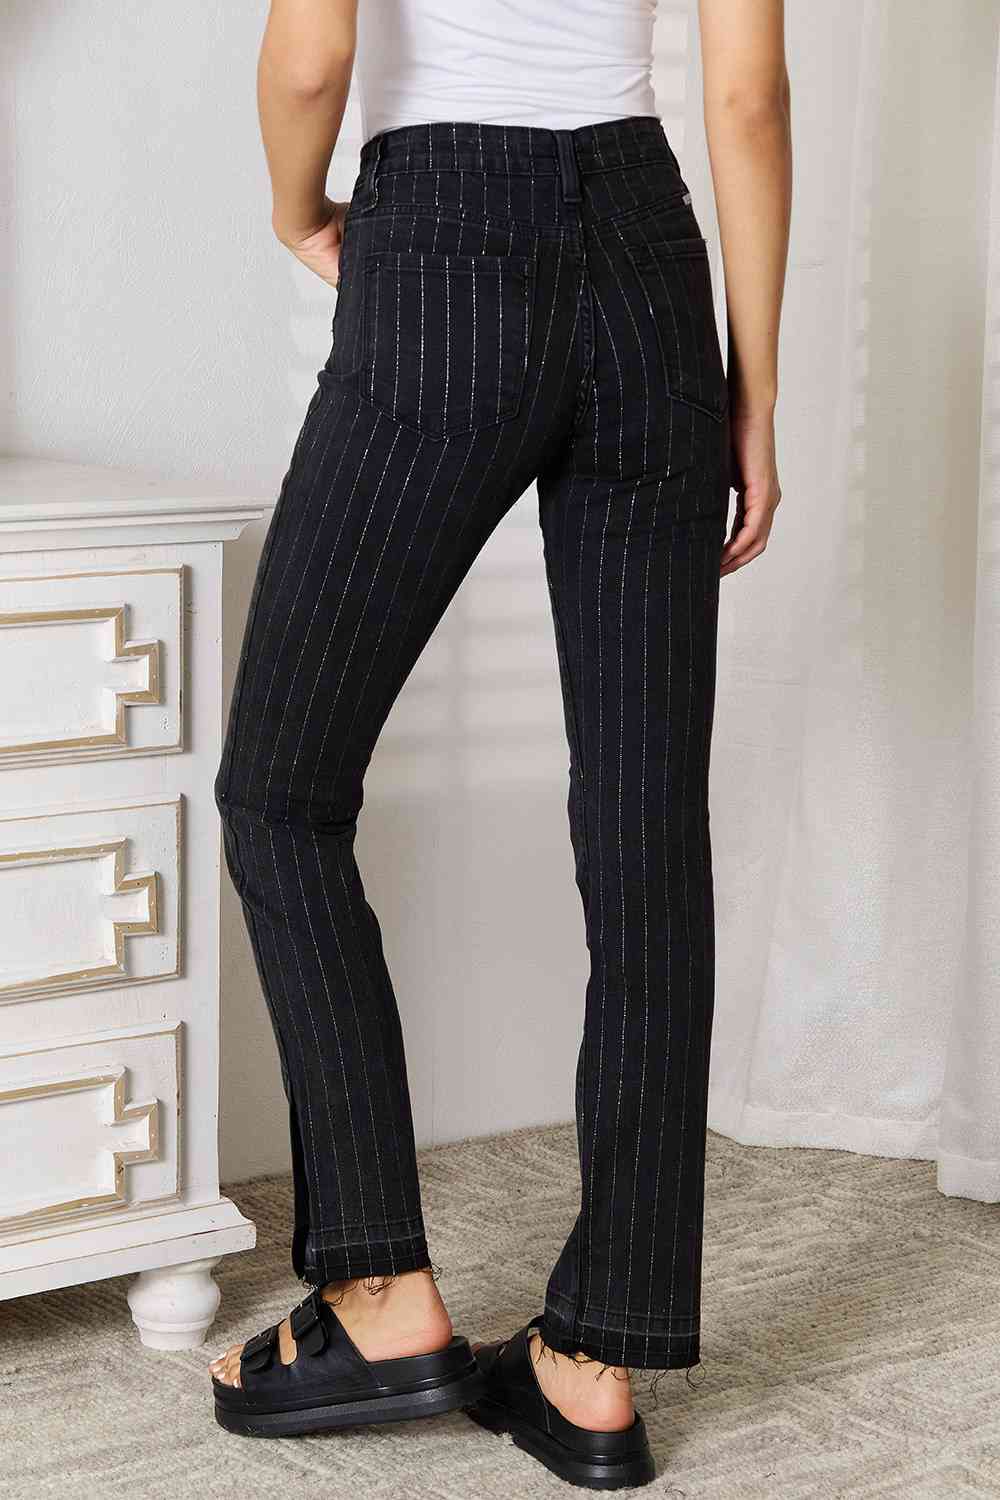 Kancan Black Striped Pants with Pockets jeans jehouze 